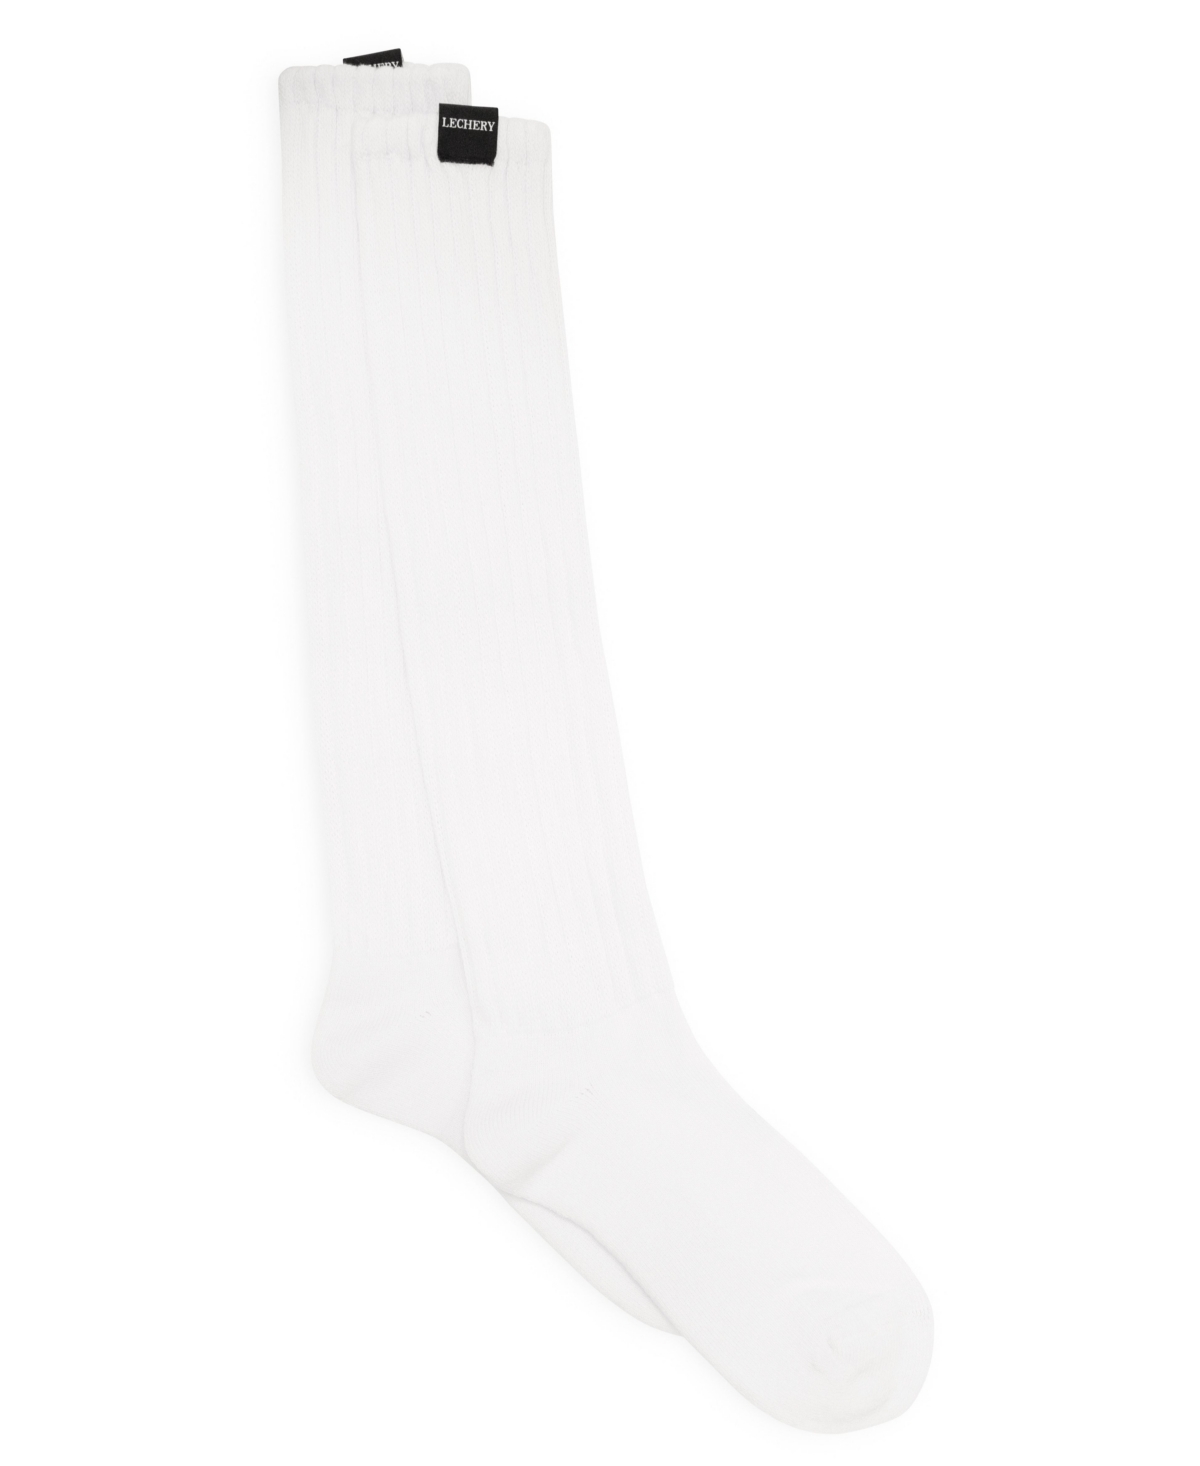 Unisex European Made Scrunch Socks - Gray